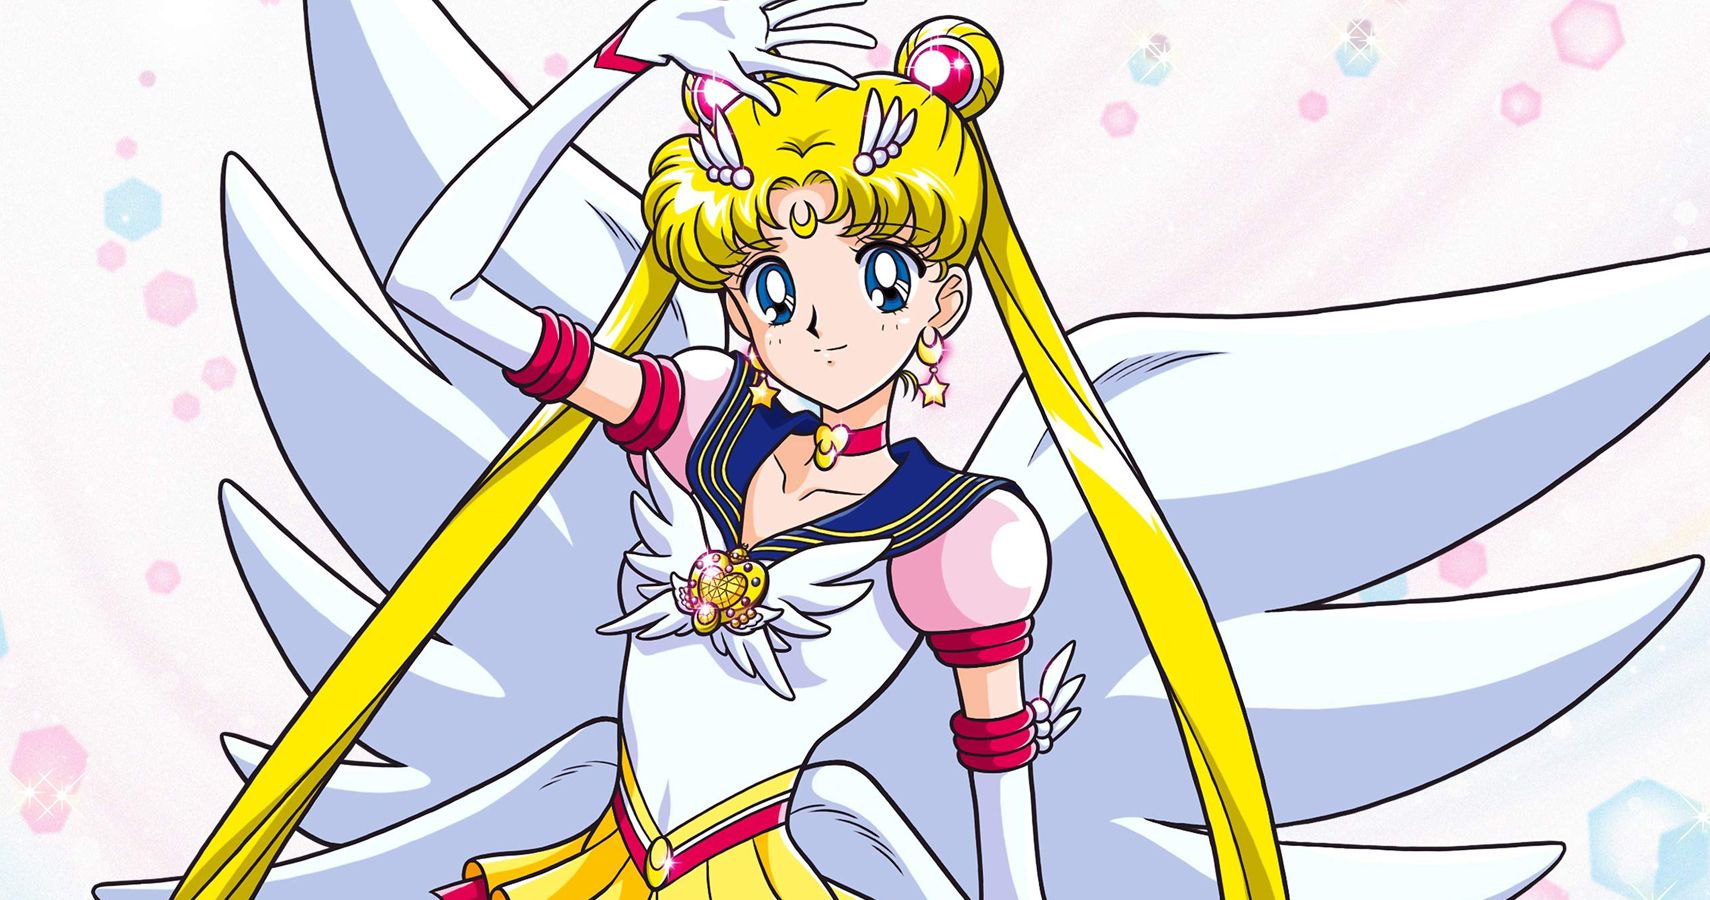 Tudo Sobre Animes: Sailor Moon Sailor Stars!